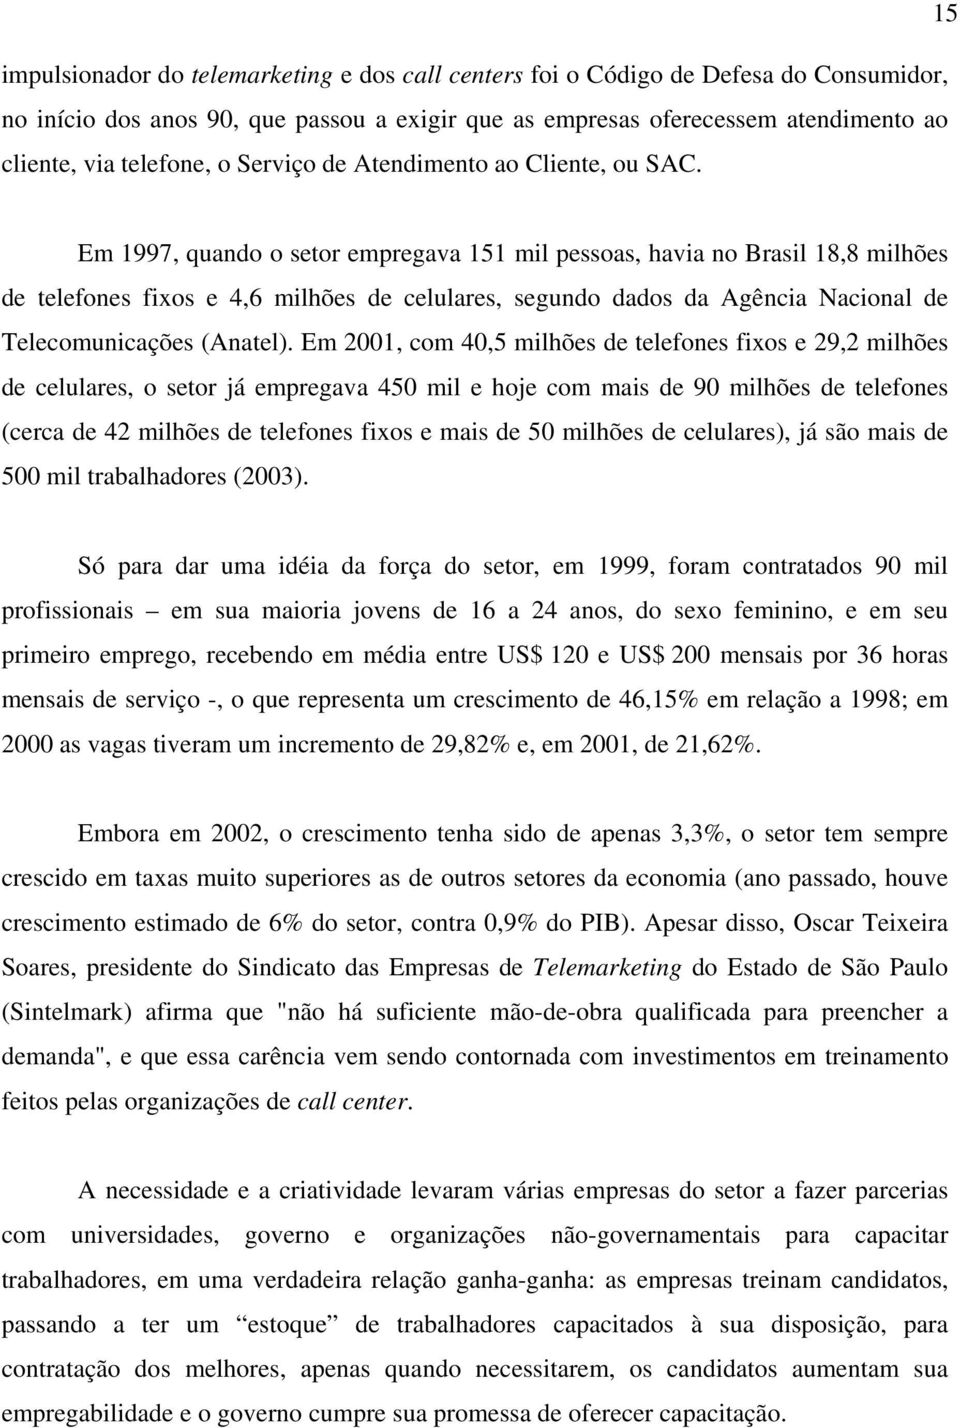 Em 1997, quando o setor empregava 151 mil pessoas, havia no Brasil 18,8 milhões de telefones fixos e 4,6 milhões de celulares, segundo dados da Agência Nacional de Telecomunicações (Anatel).